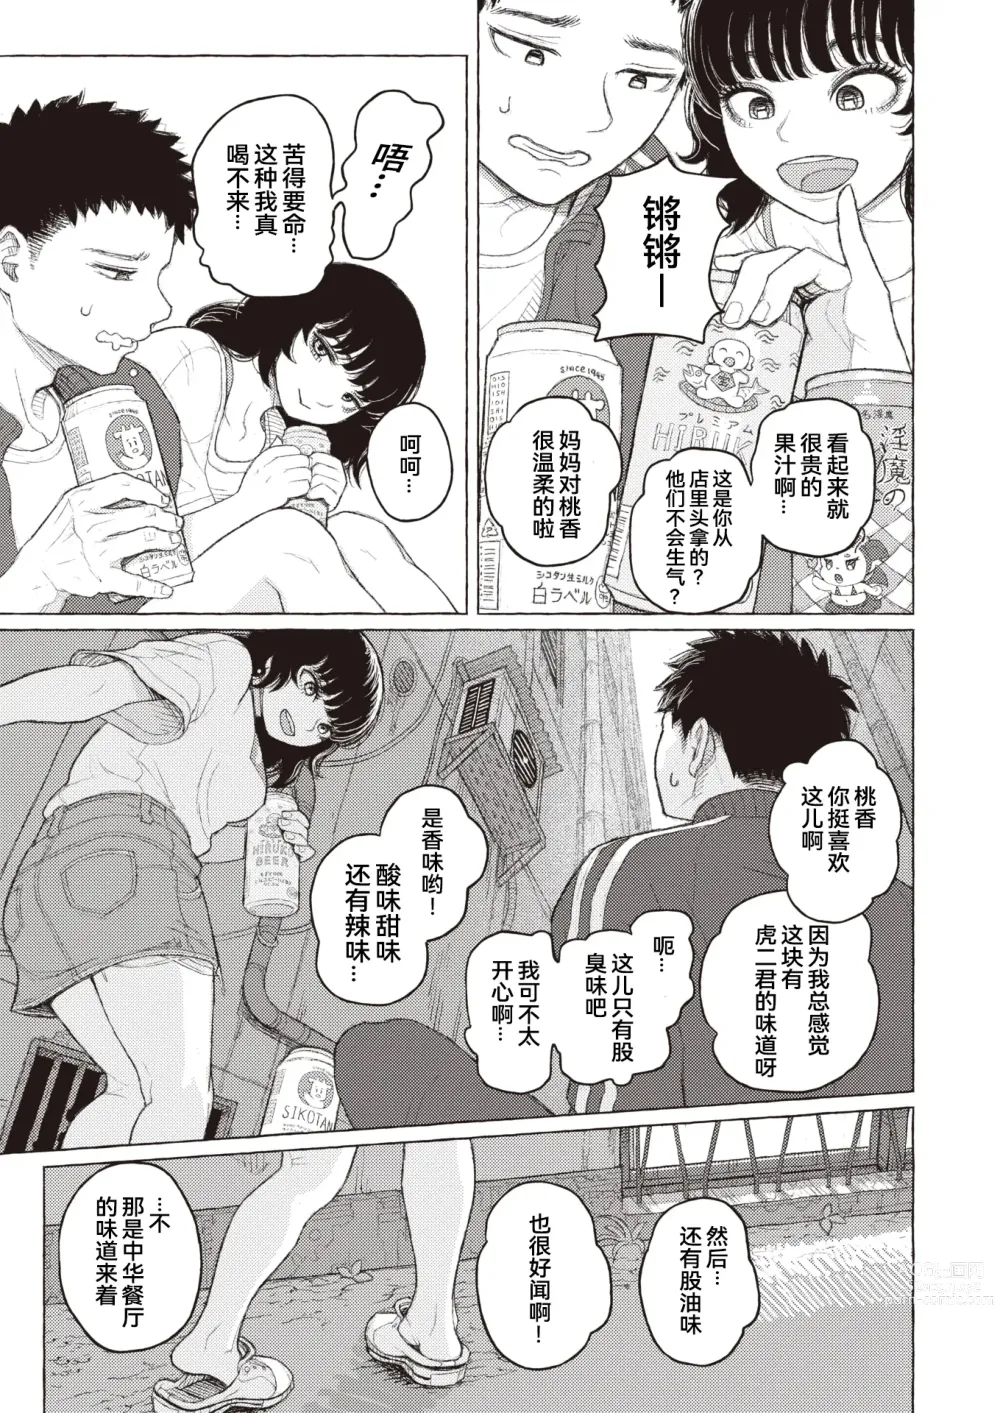 Page 5 of manga 纯情小路